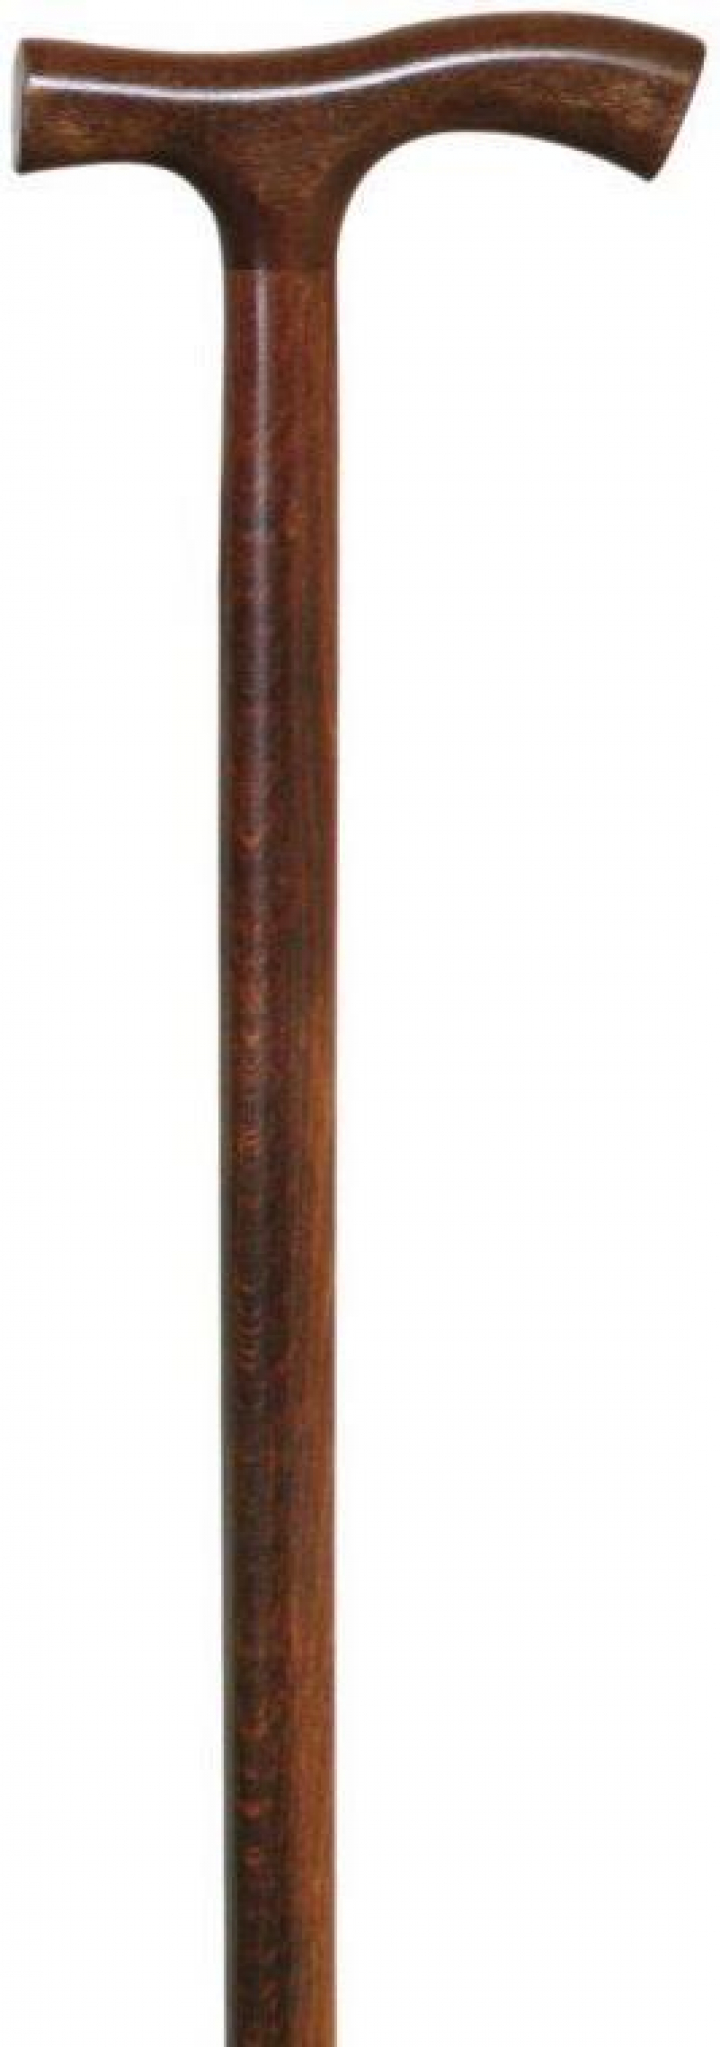 Bengala de madeira com punho em T curvo Ref.80 31BE05